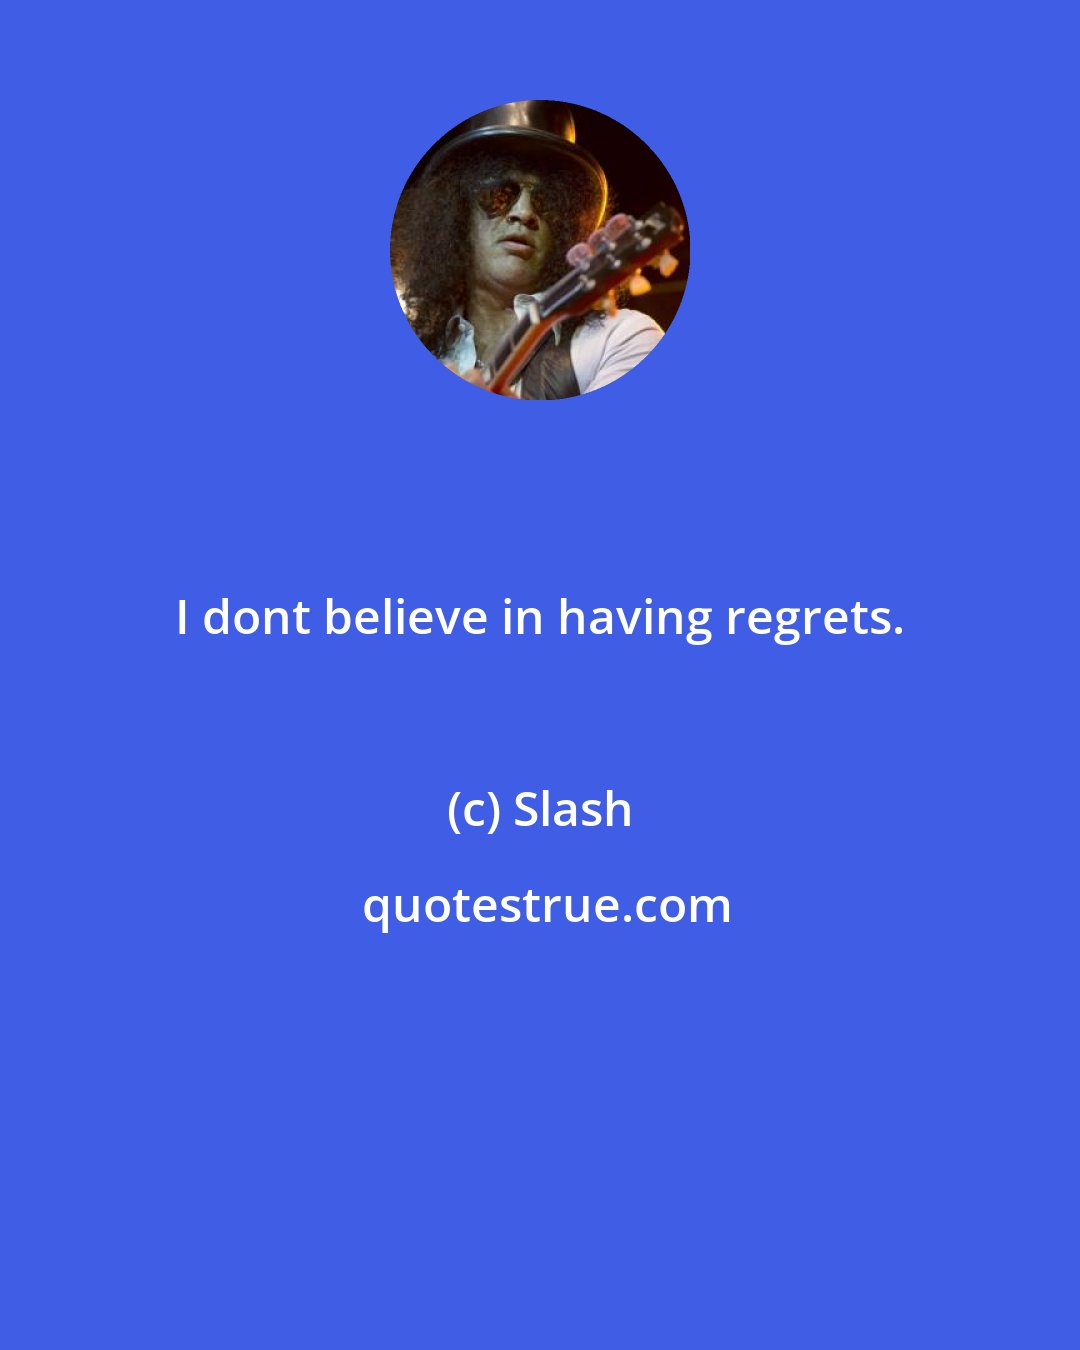 Slash: I dont believe in having regrets.